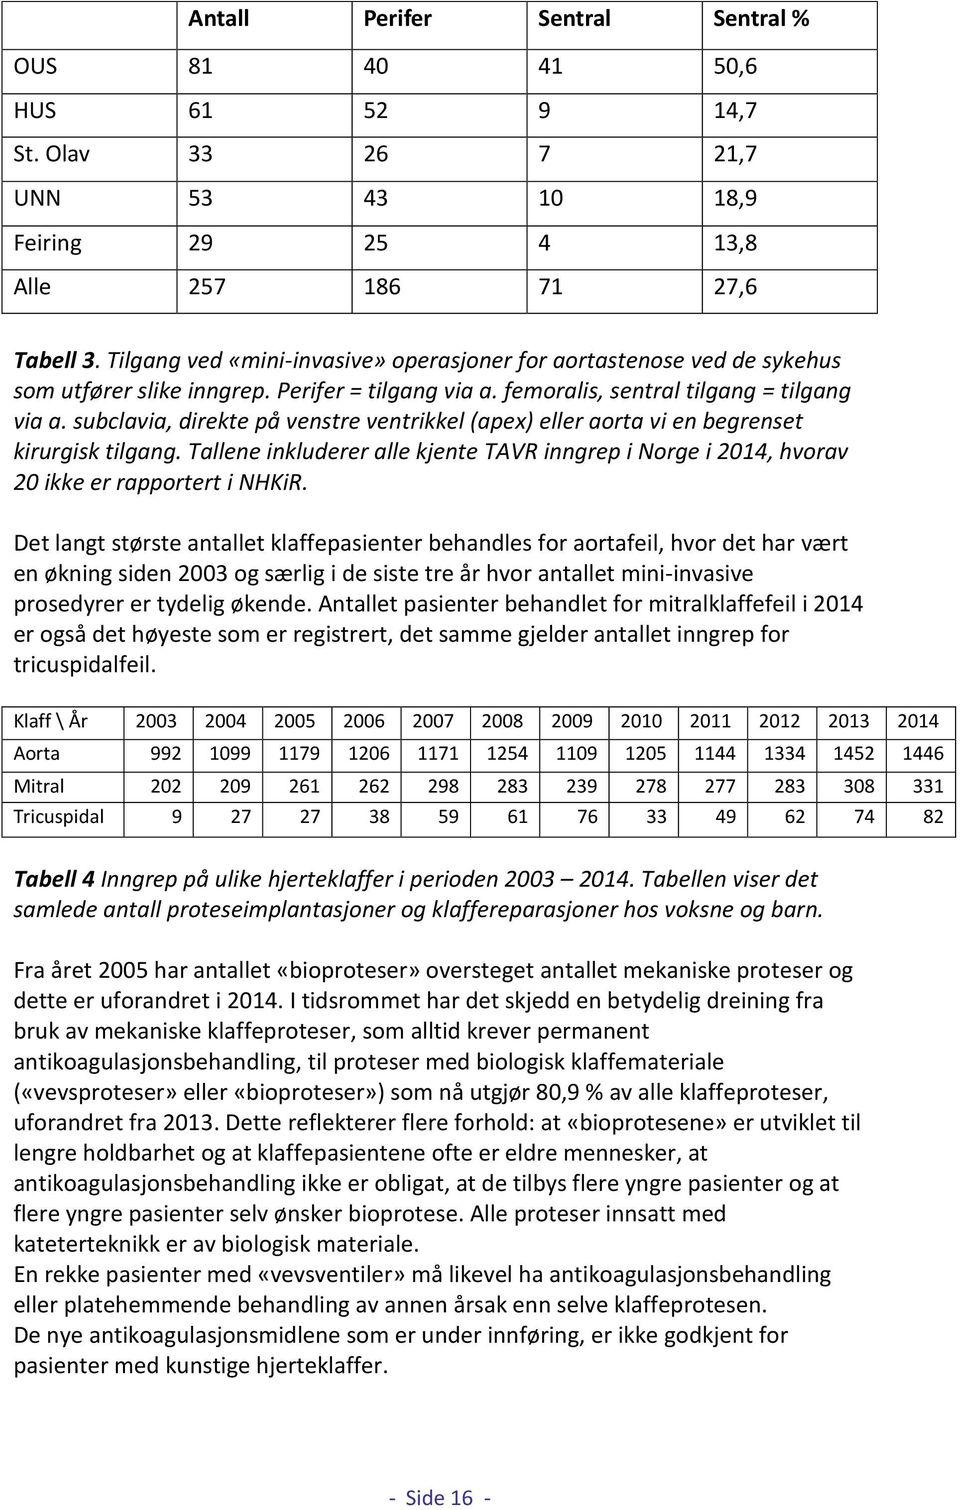 subclavia, direkte på venstre ventrikkel (apex) eller aorta vi en begrenset kirurgisk tilgang. Tallene inkluderer alle kjente TAVR inngrep i Norge i 2014, hvorav 20 ikke er rapportert i NHKiR.